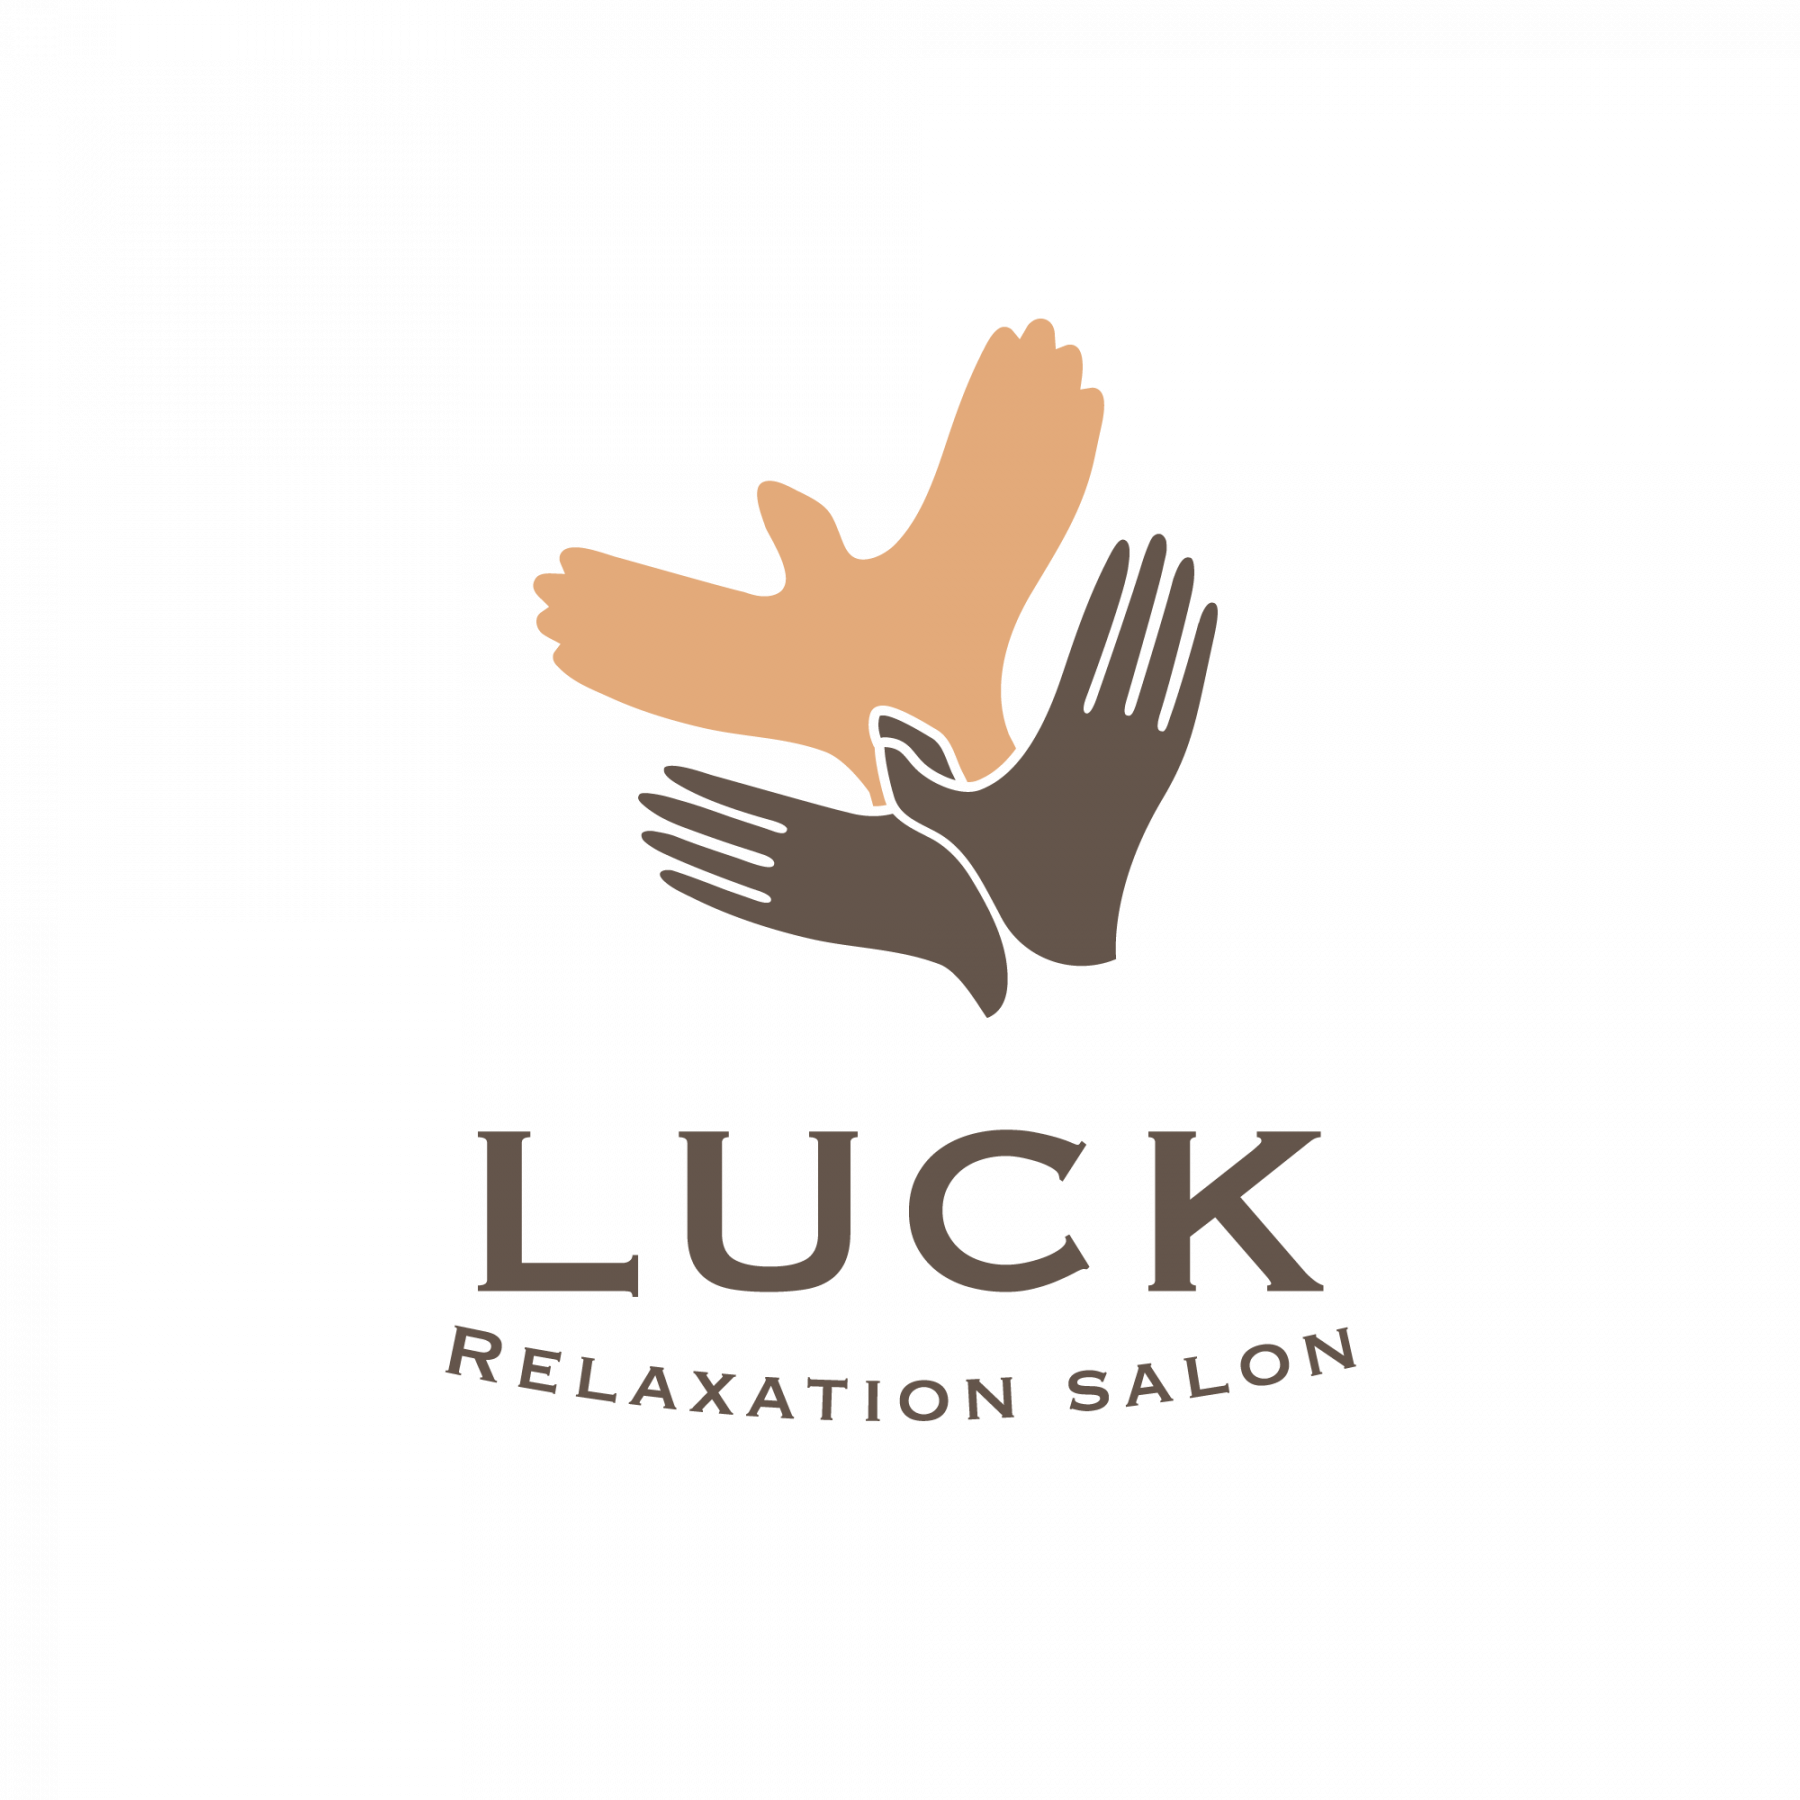  LUCK
Relaxation Salon